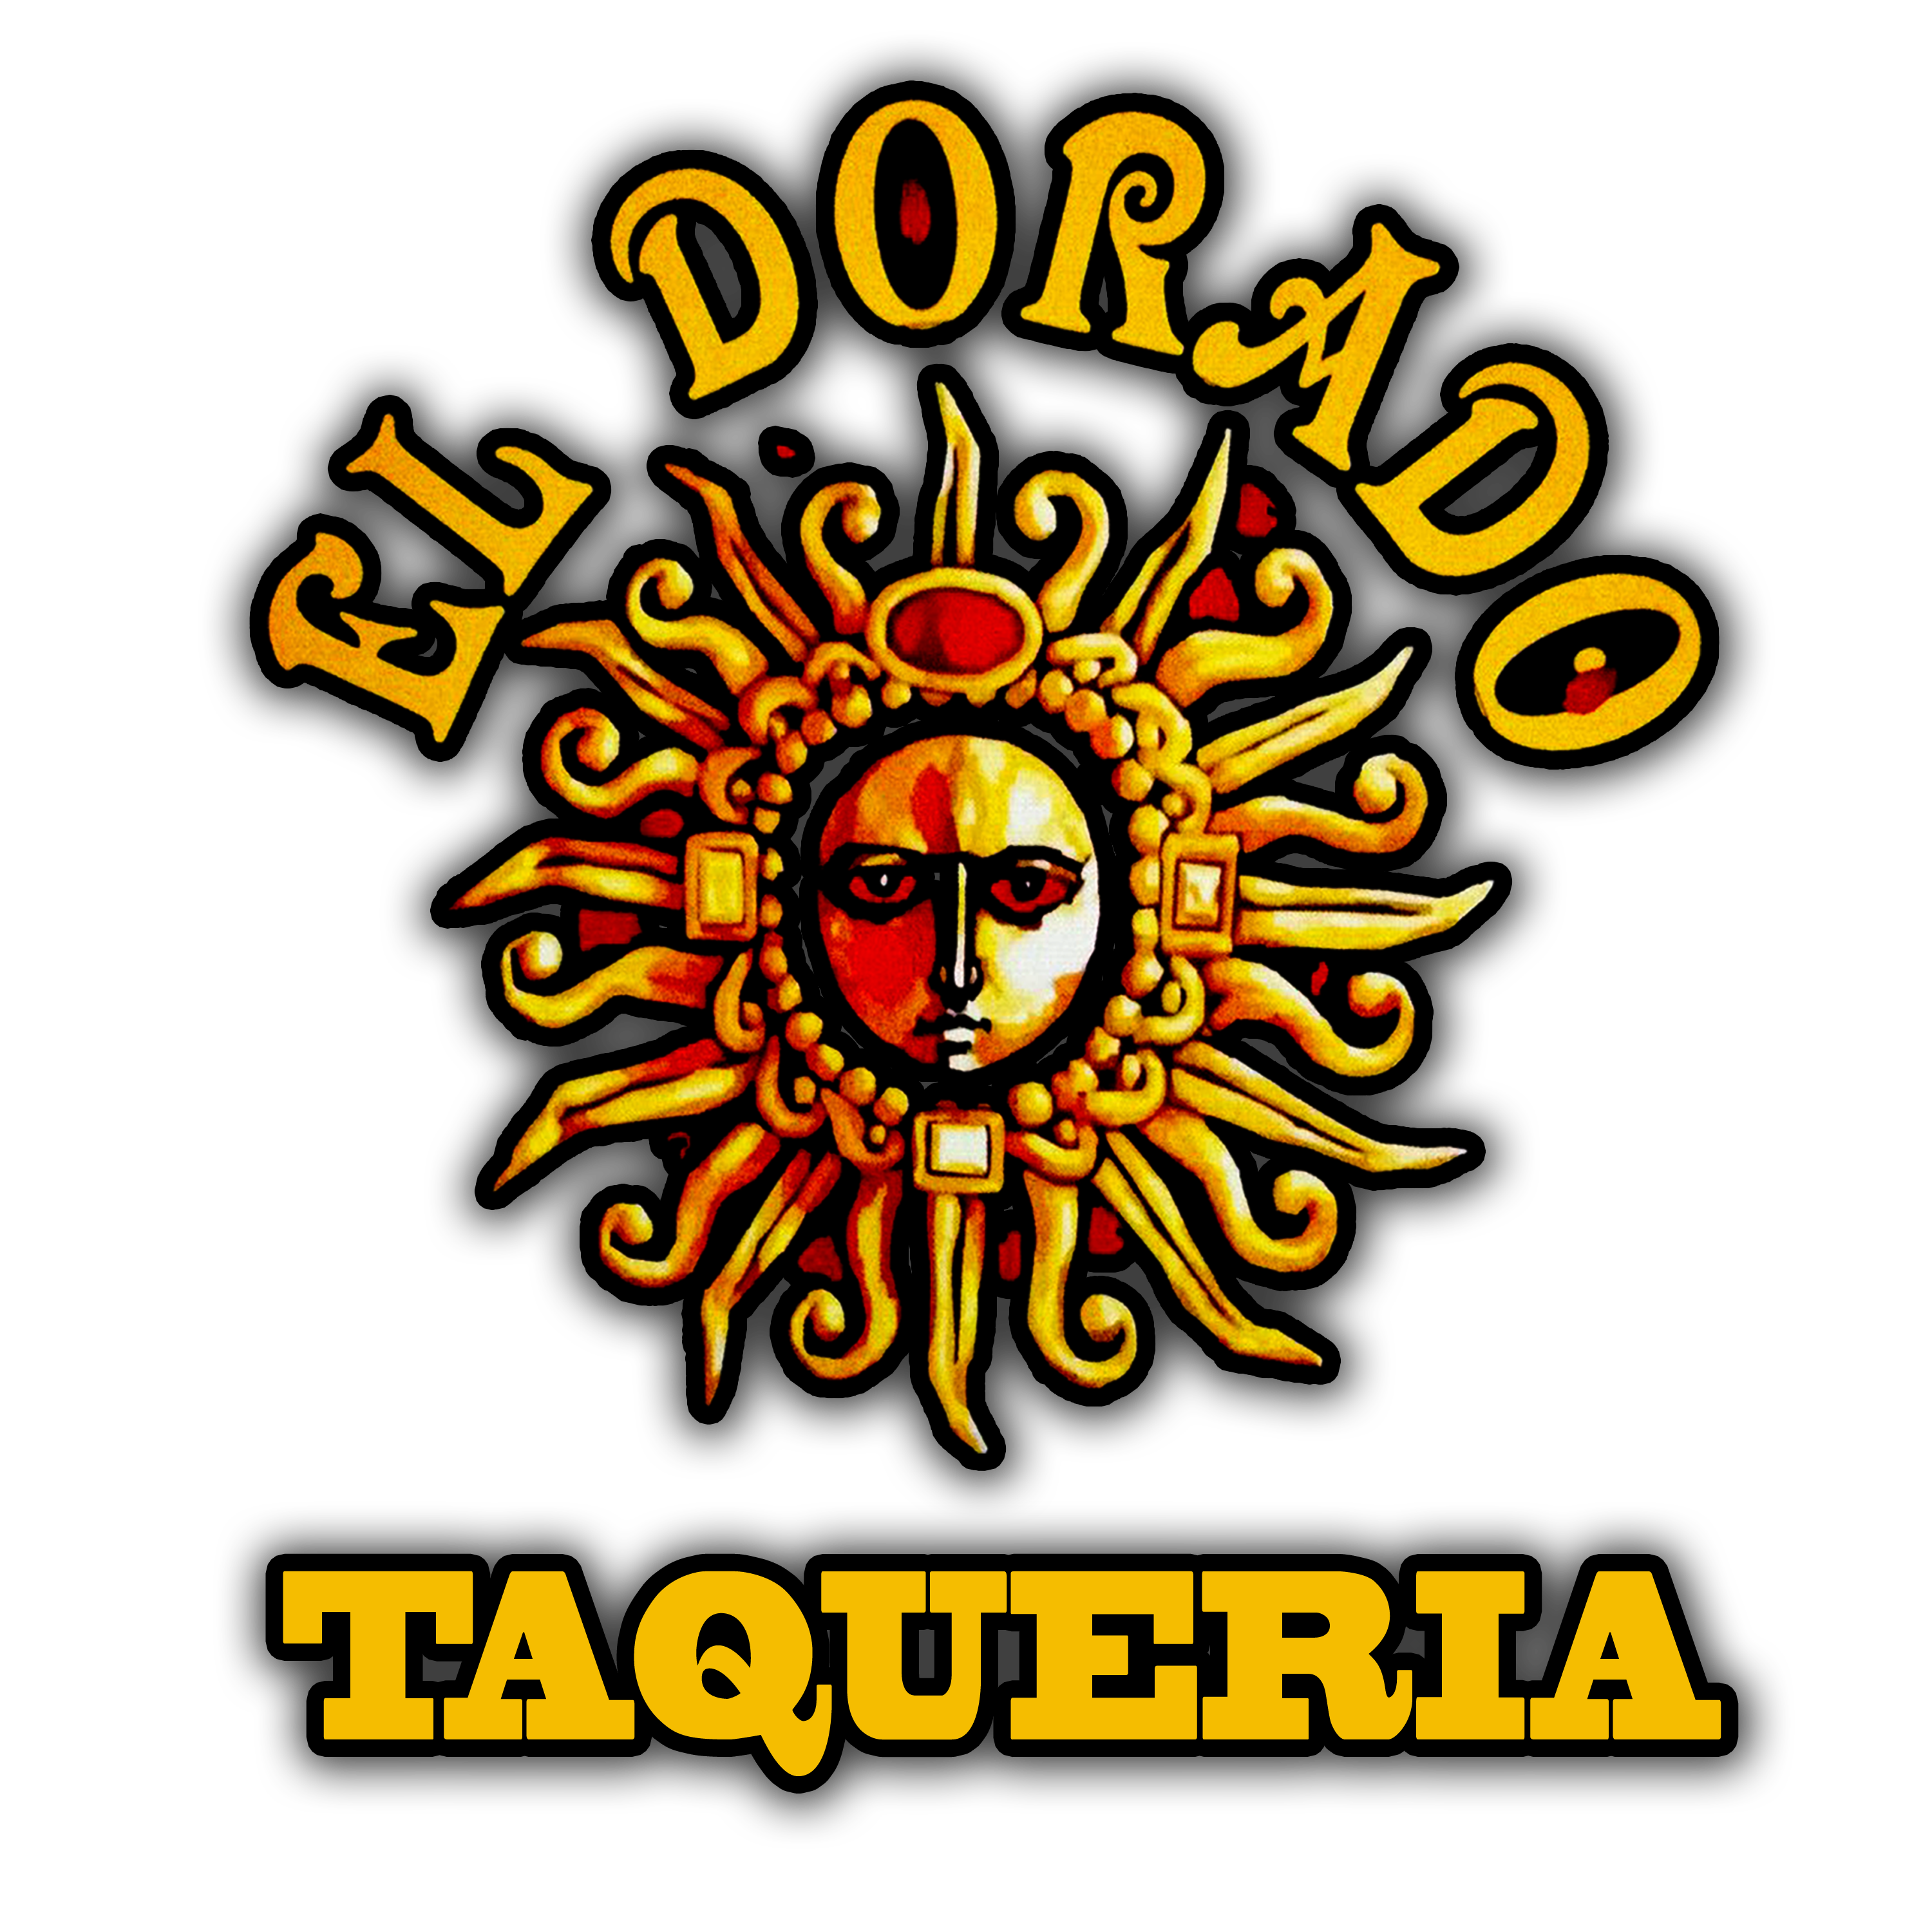 El Dorado Taqueria